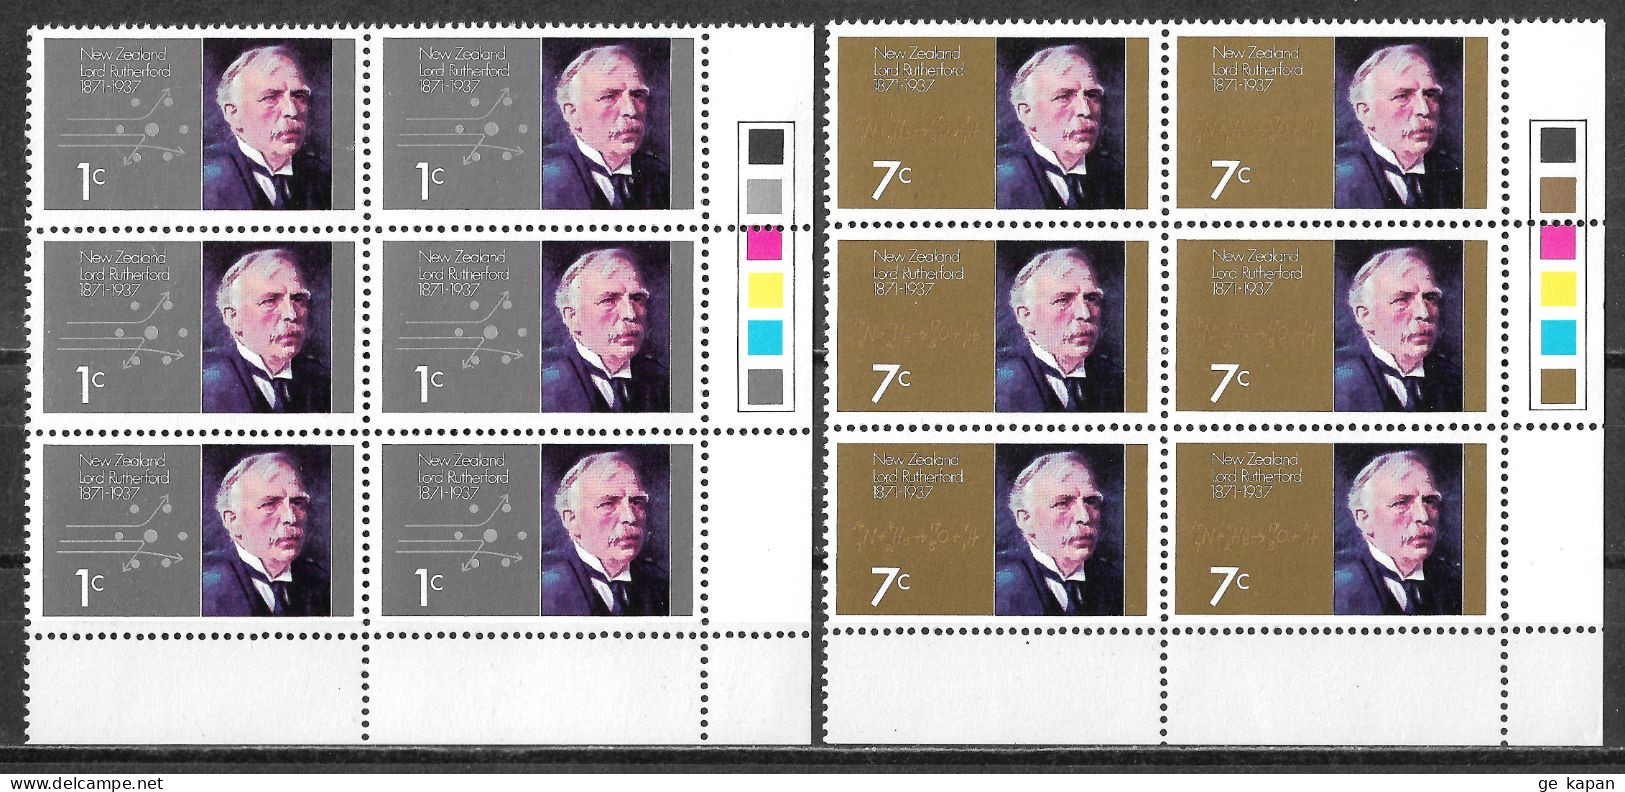 1971 NEW ZEALAND Complete Set Of 2 Blocks Of 6 MNH OG Stamps (Scott # 487,488) CV $5.40 - Unused Stamps